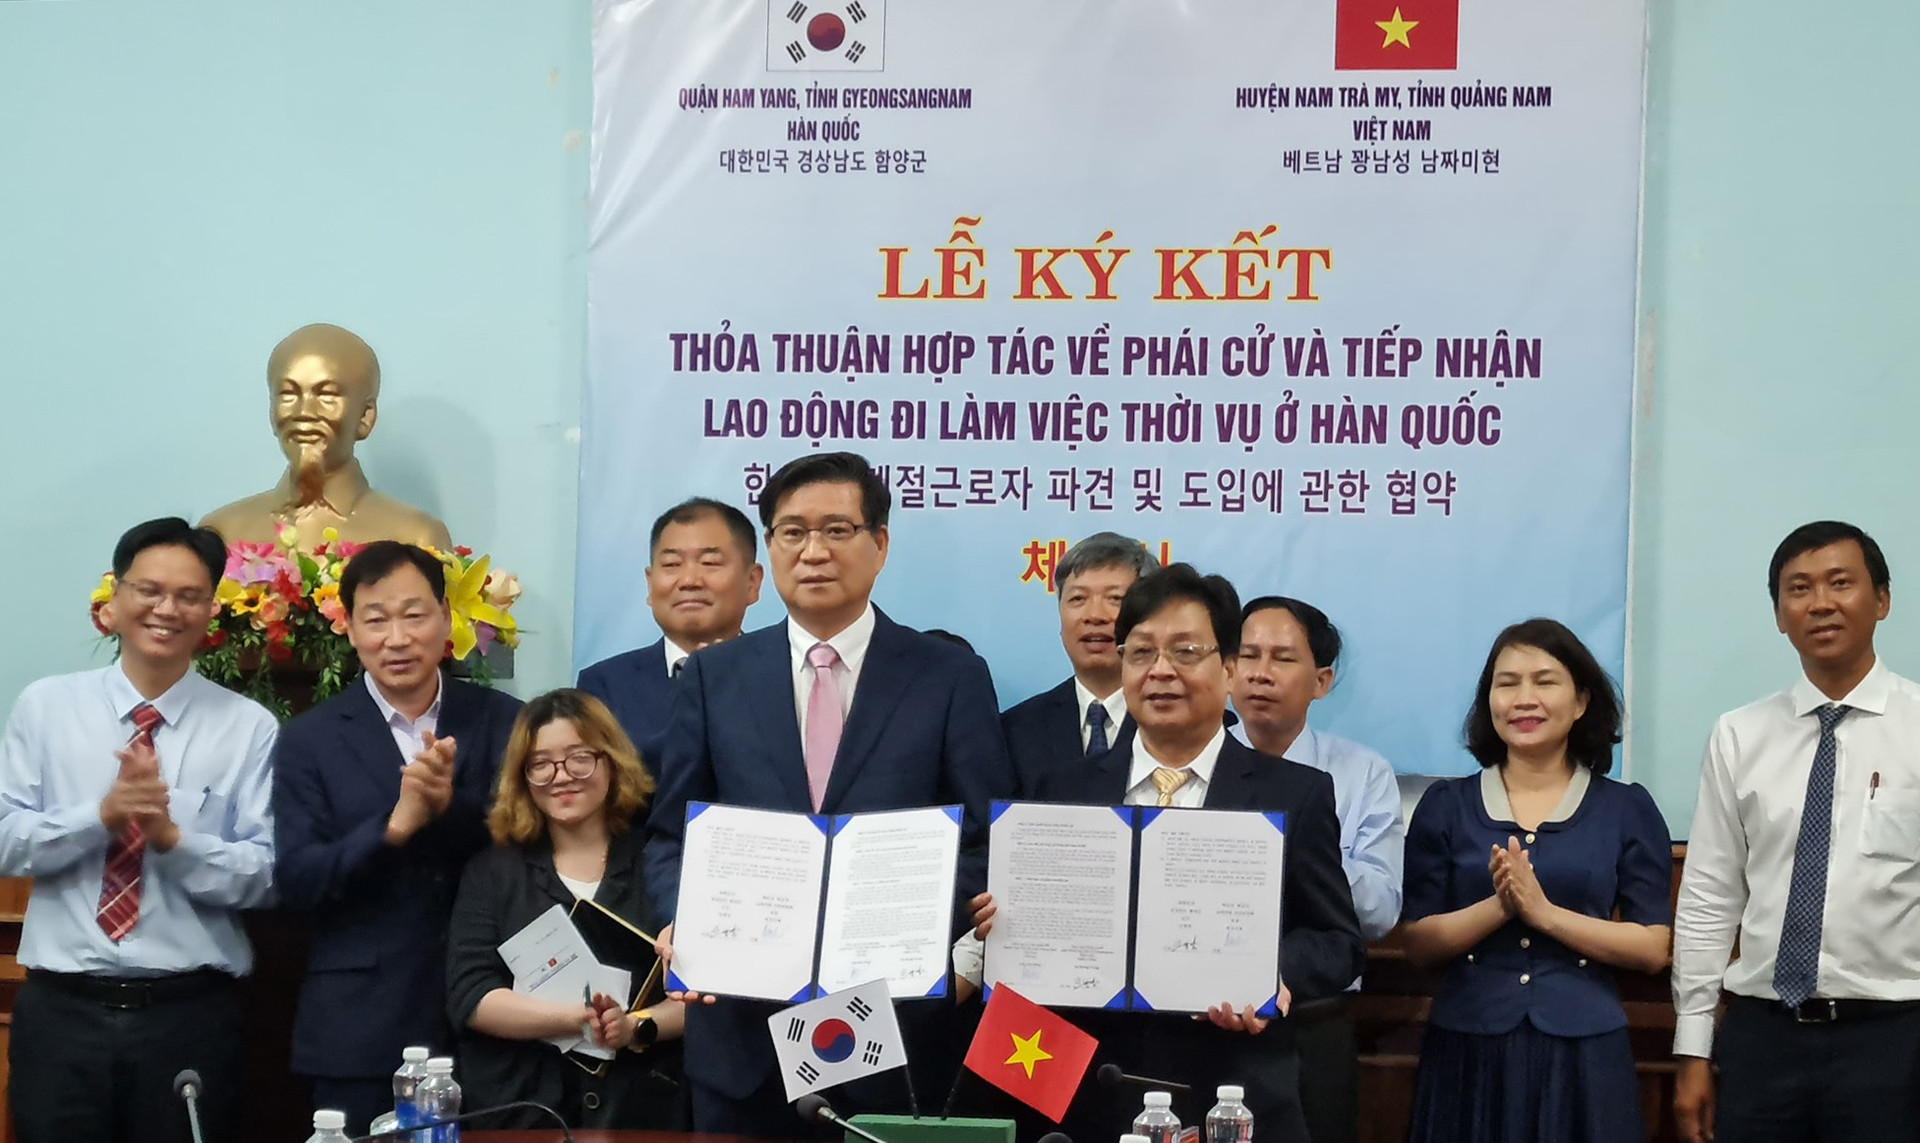 Huyện Nam Trà My và quận Ham Yang ký kết thỏa thuận hợp tác lao động. Ảnh: D.L